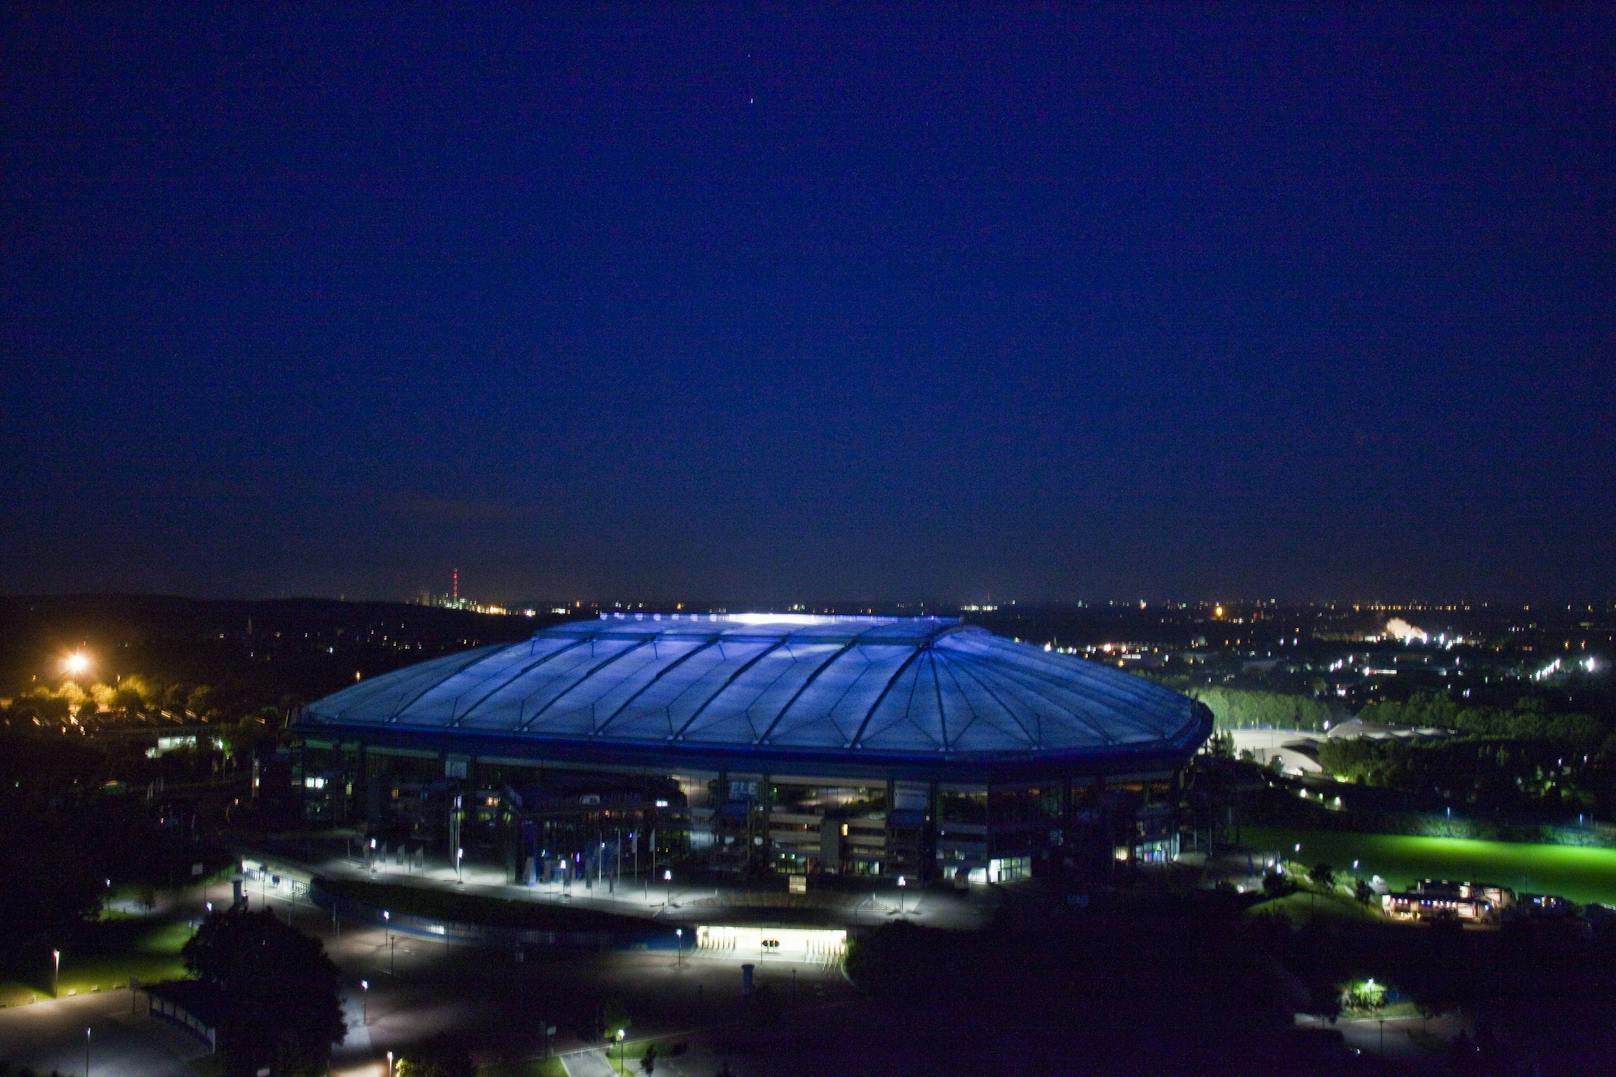 <strong>Arena AufSchalke:</strong> Seit 2001 bestreitet der FC Schalke 04 seine Heimspiele in der Arena AufSchalke. Das Multifunktionsstadion hat ein schließbares Dach und einen verschiebbaren Rasen. Daher ist es nicht nur Austragungsort für Fußballspiele, sondern auch für Konzerte und Opernaufführungen.